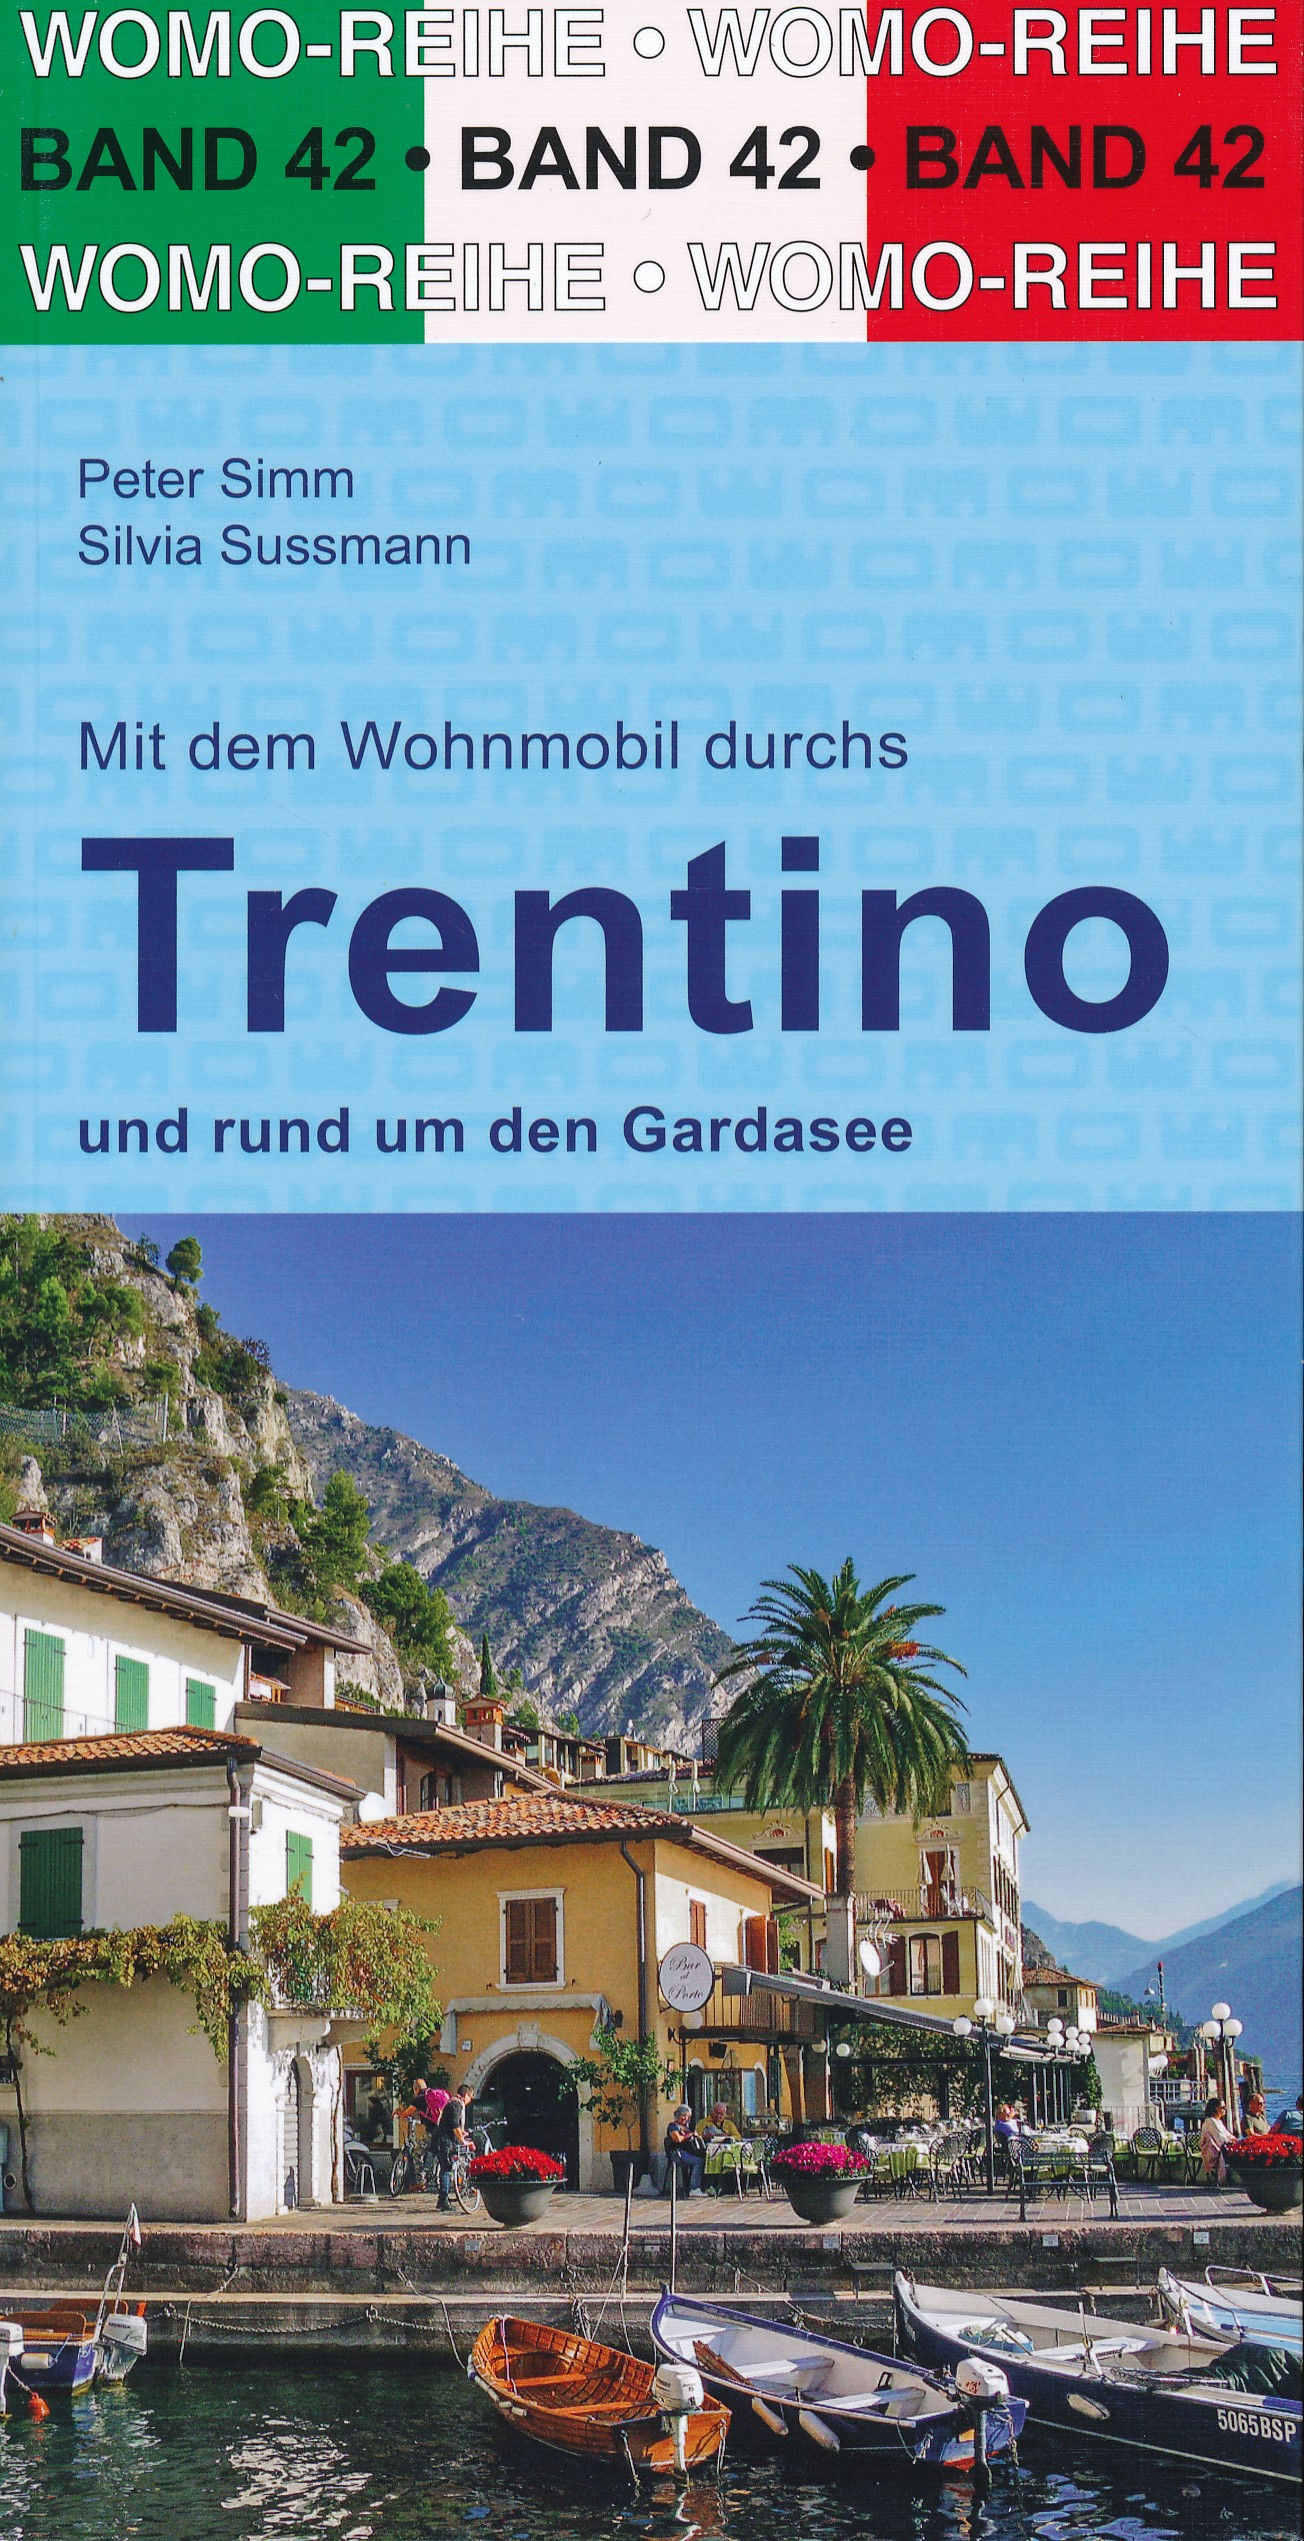 Online bestellen: Campergids 42 Mit dem Wohnmobil durchs Trentino en Gardasee, Dolomieten en Gardameer | WOMO verlag